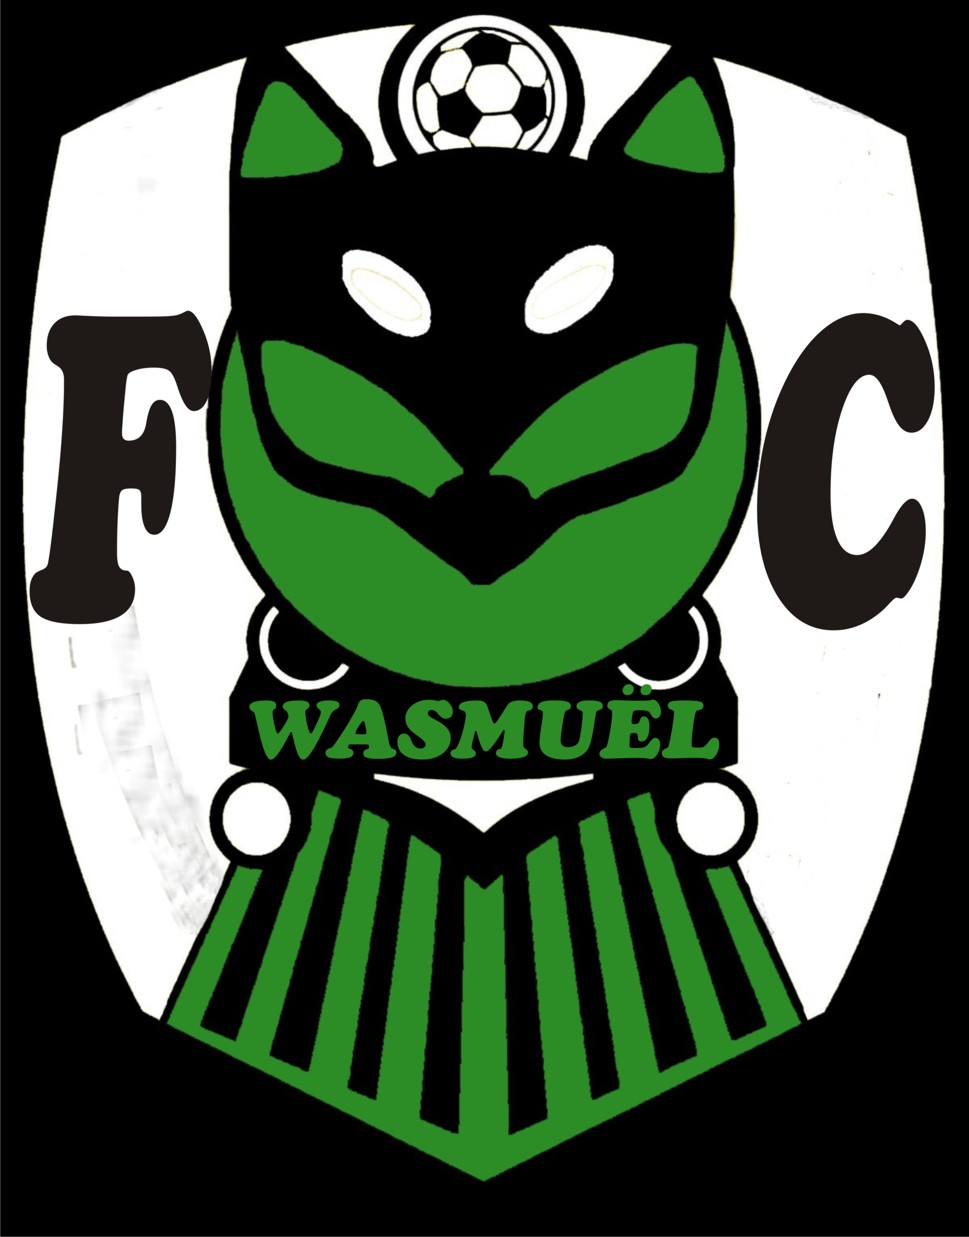 8 - Football Club Wasmuel